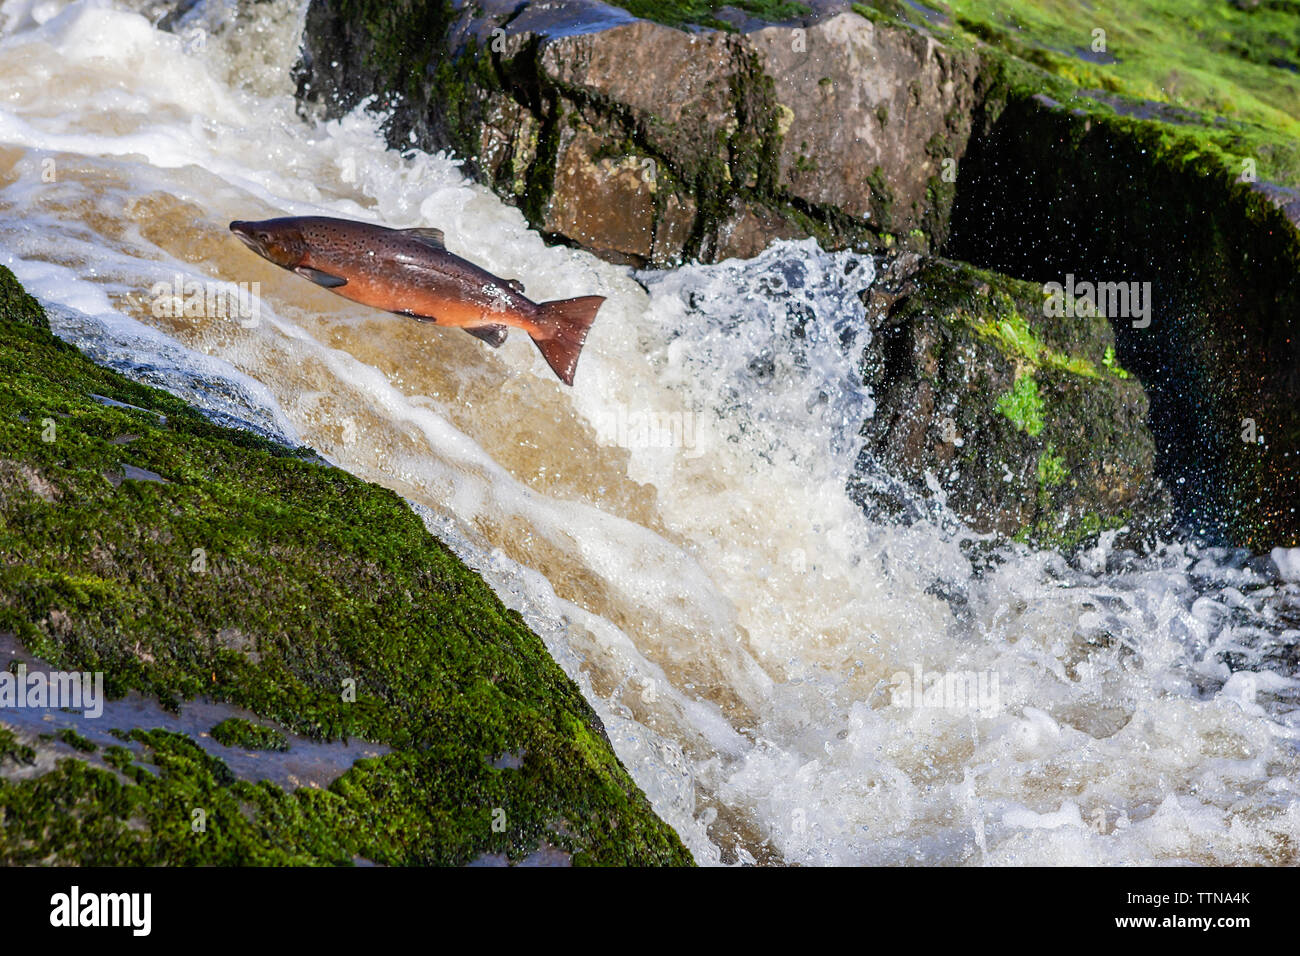 Atlantischer Lachs (Salmo Salar), der einen Wasserfall auf dem Weg zu seinem Brutplatz in dem Fluss, in dem er geboren wurde, hochspringend. Stockfoto